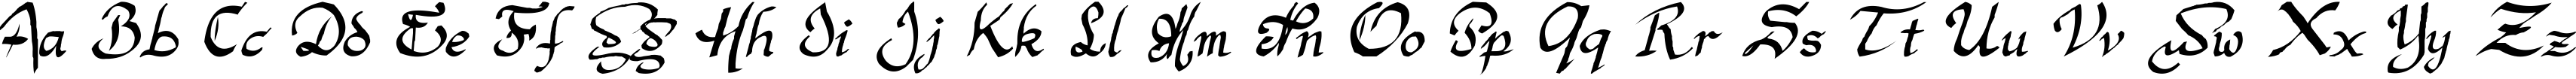 Пример написания английского алфавита шрифтом Argor Man Scaqh